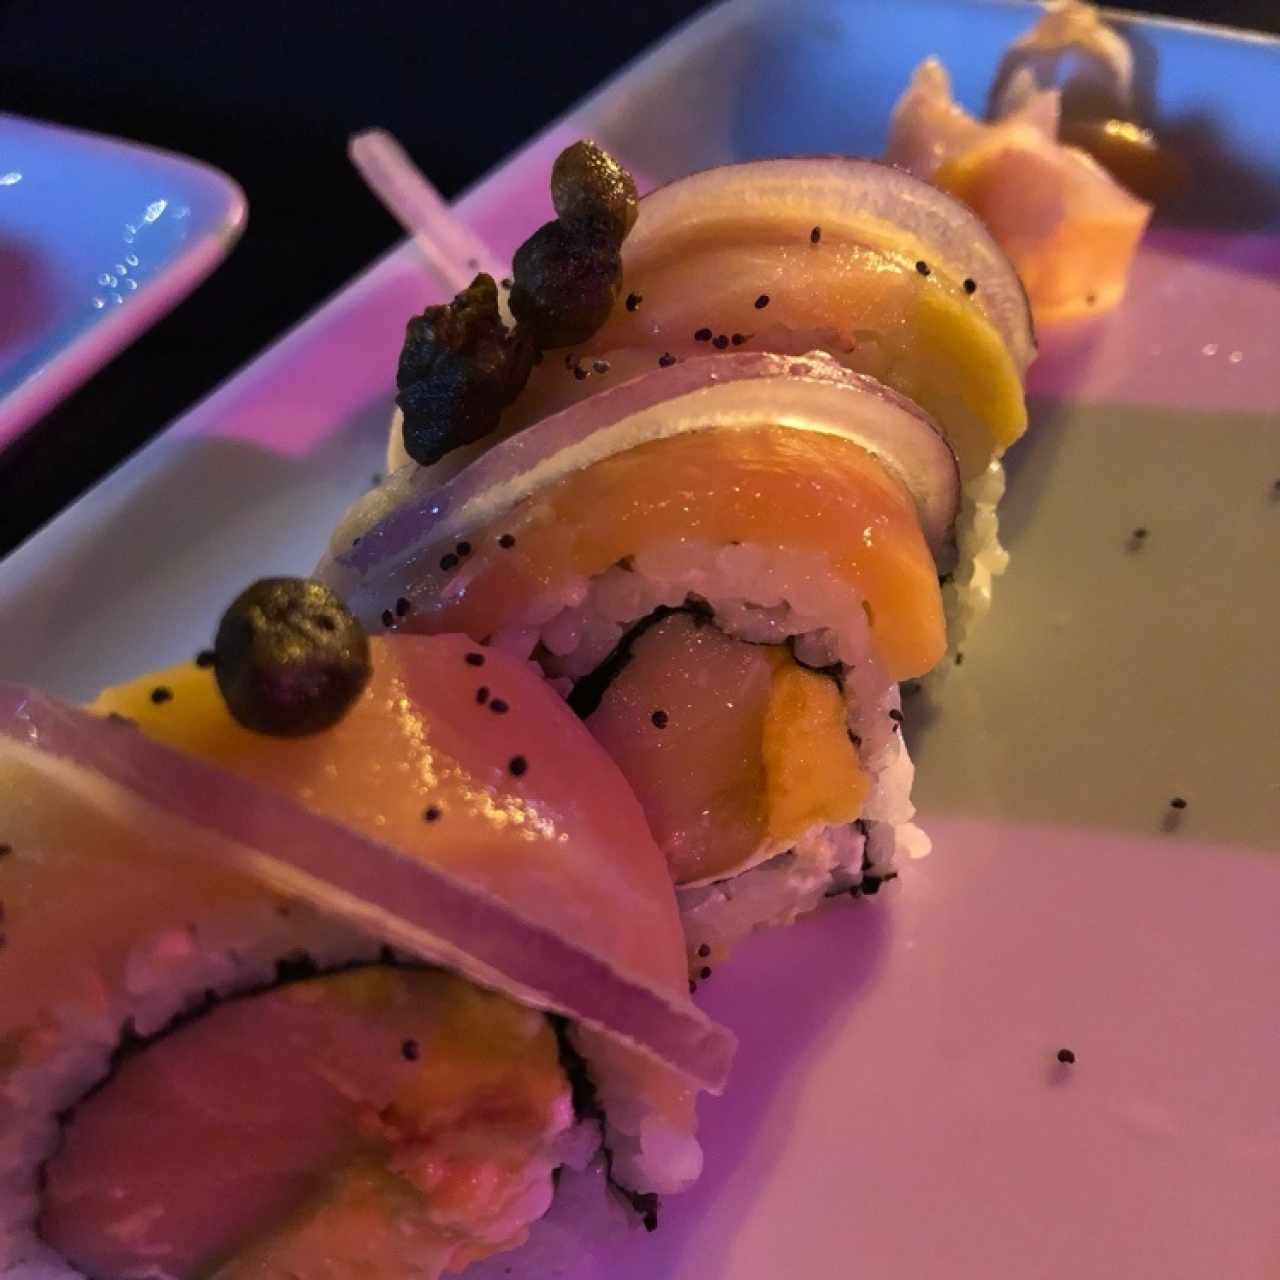 Sushi rolls/Makis - Harumaki